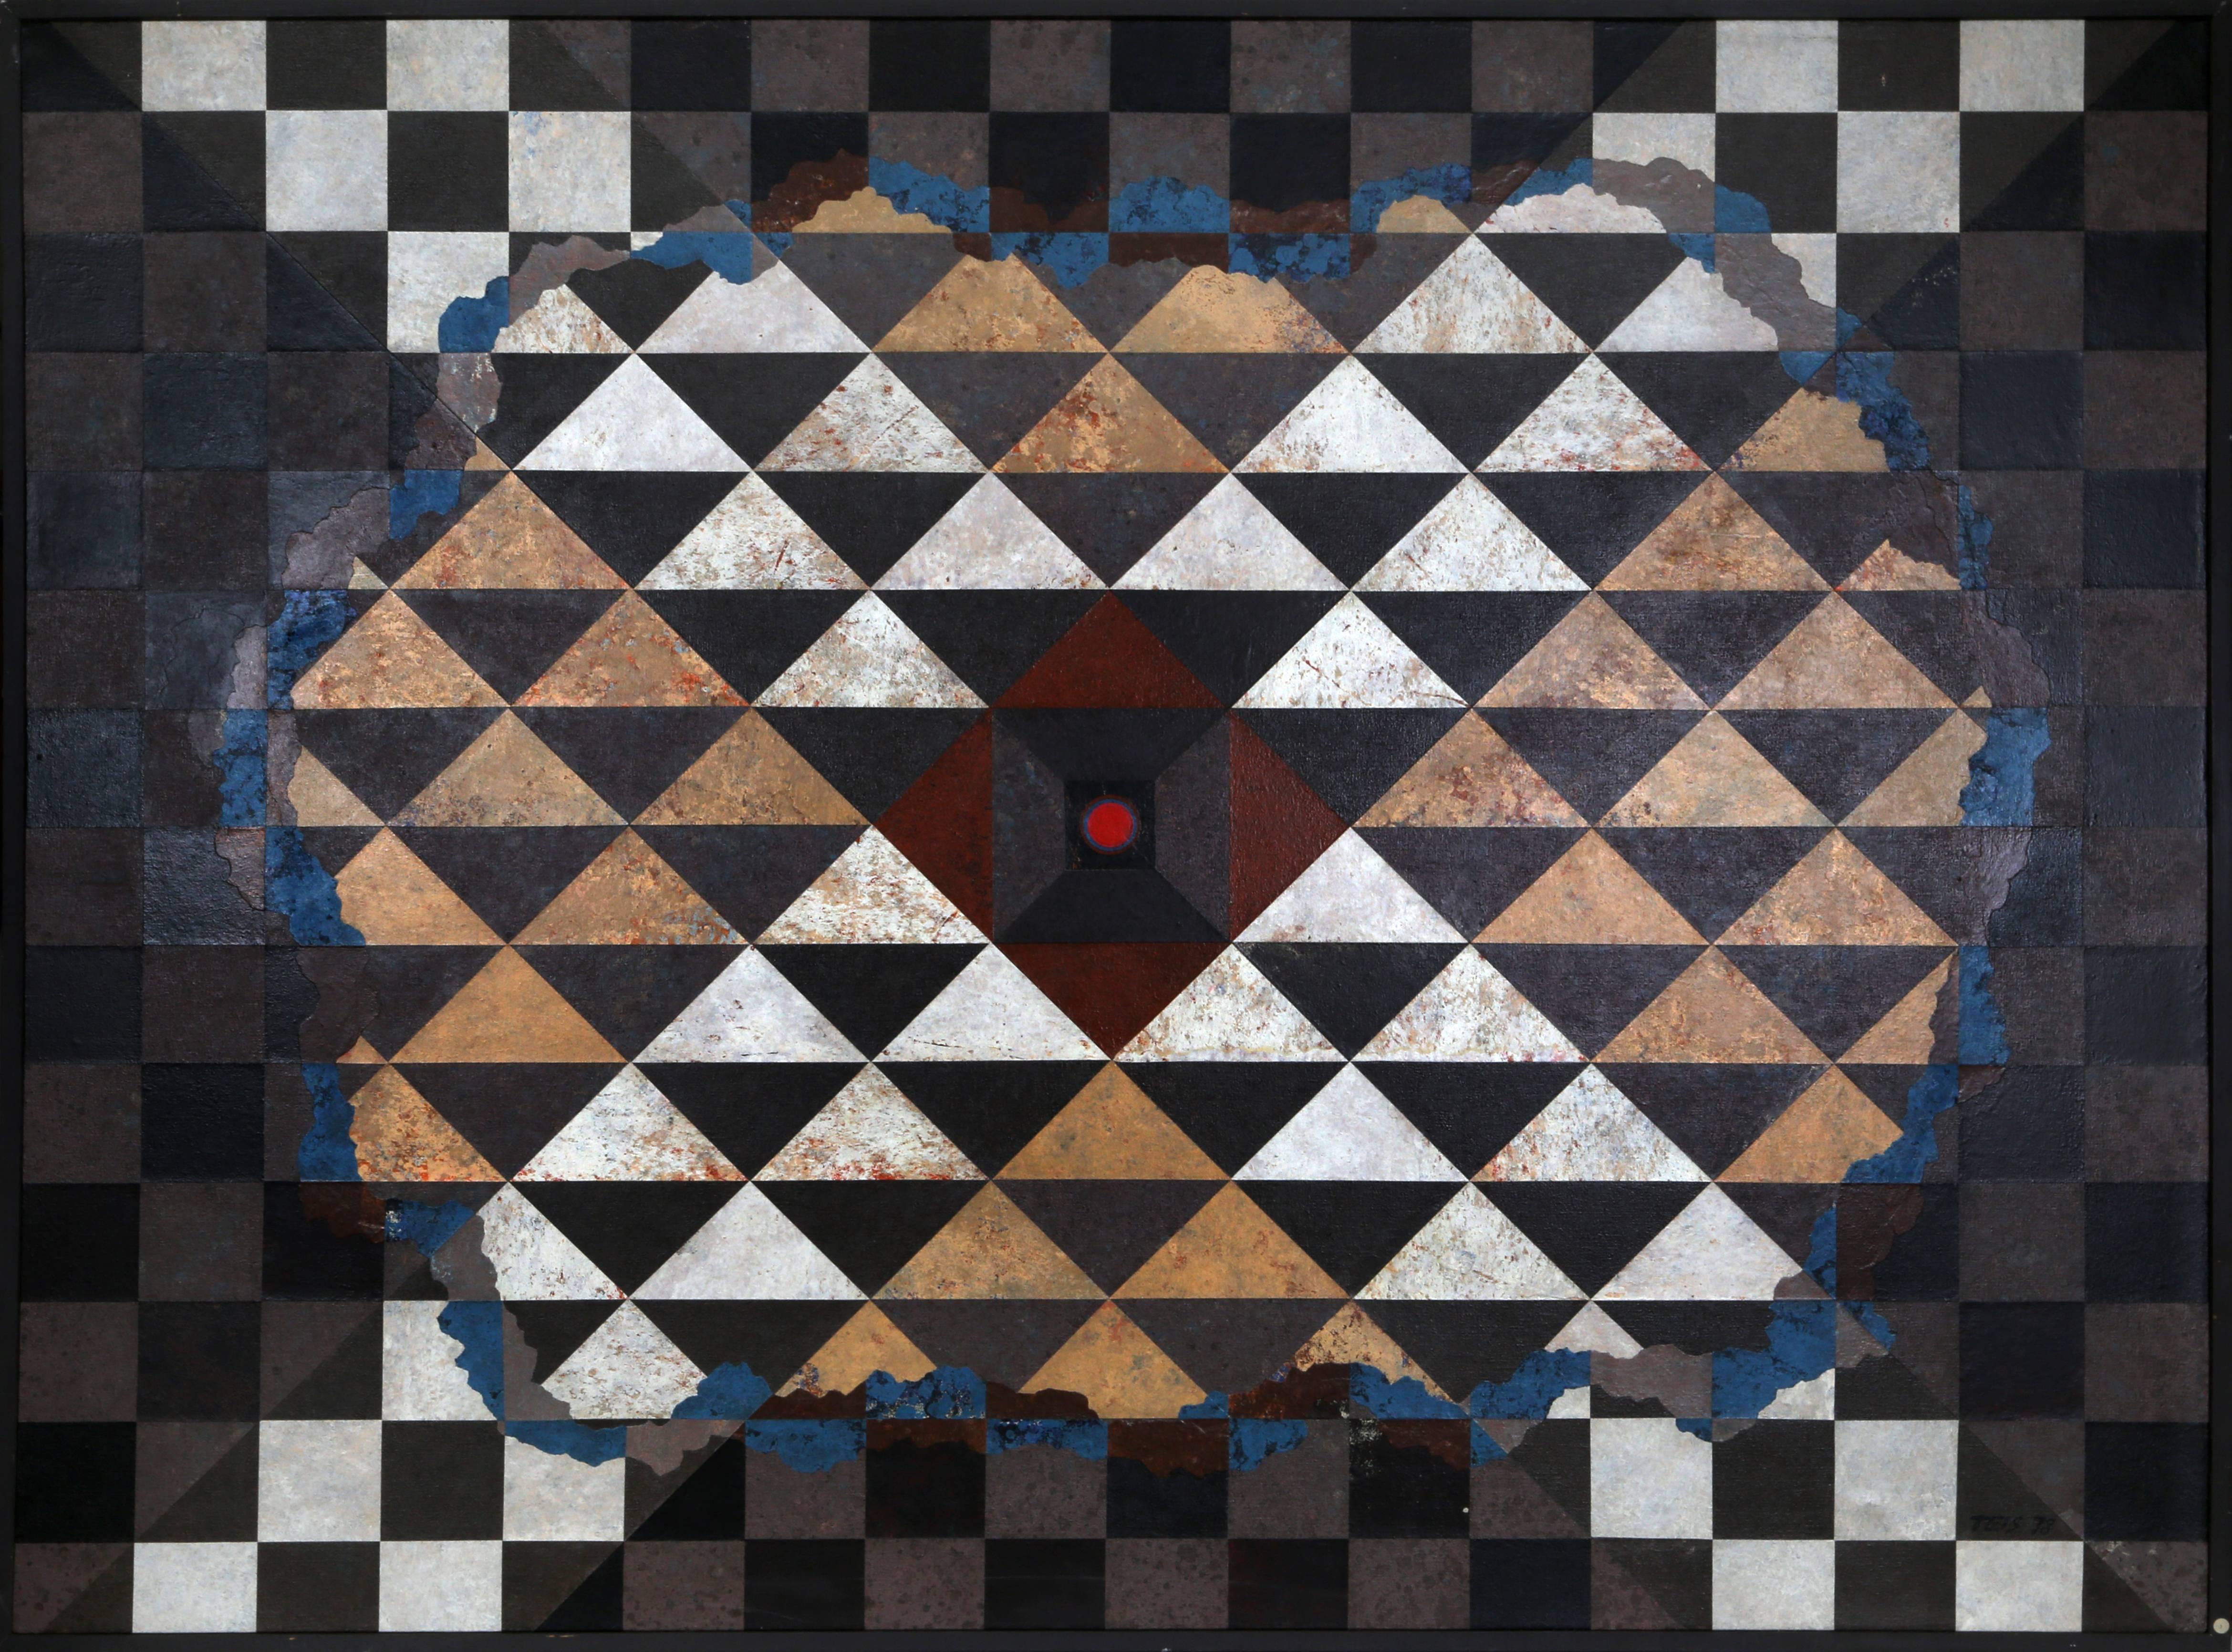 Künstler: Daniel K. Teis, Amerikaner (1925 - 2002)
Titel: Abstrakt mit Checker-Muster
Medium: Öl auf Leinwand signiert l.r.
Größe: 54  x 72 in. (137.16  x 182,88 cm)